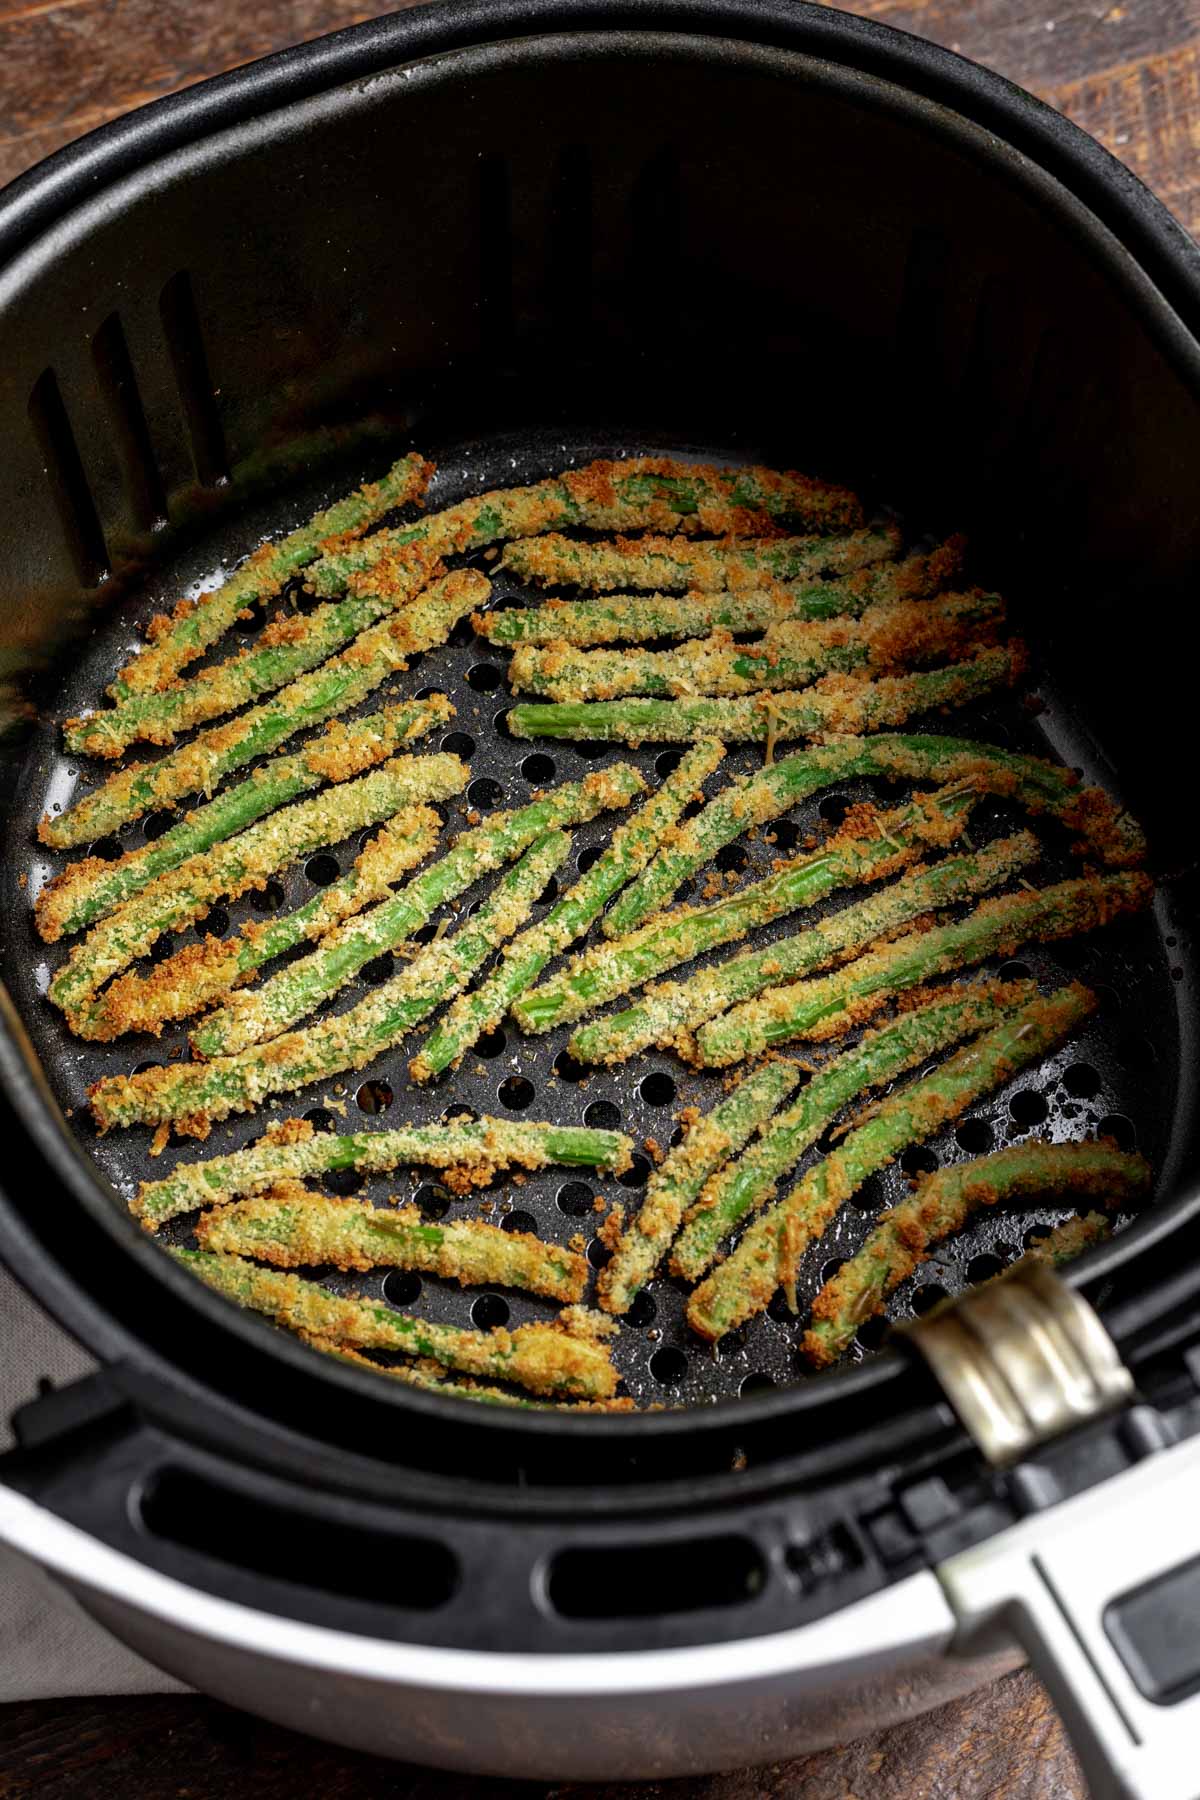 Golden brown air fryer green beans in an air fryer basket after cooking.